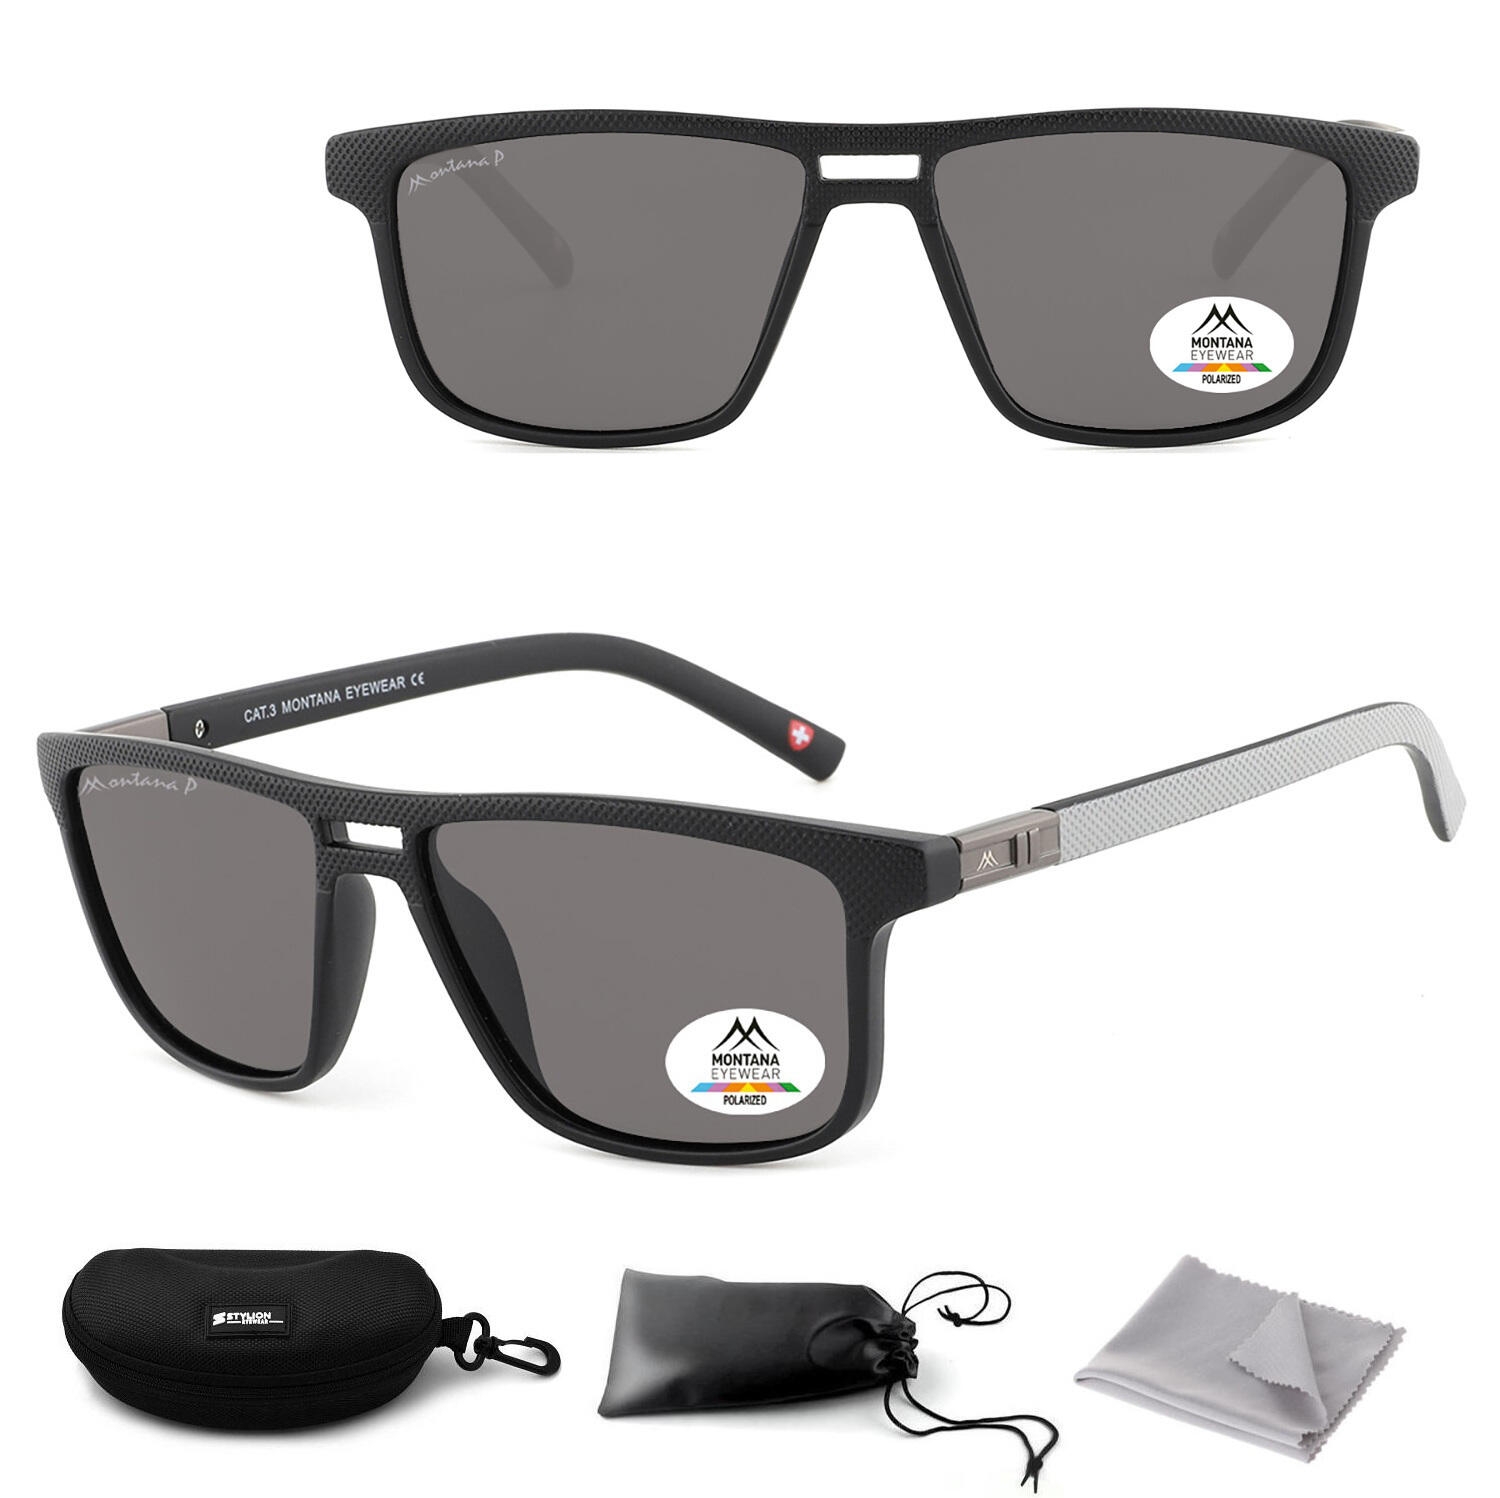 Czarne prostokątne okulary przeciwsłoneczne z polaryzacją MP3